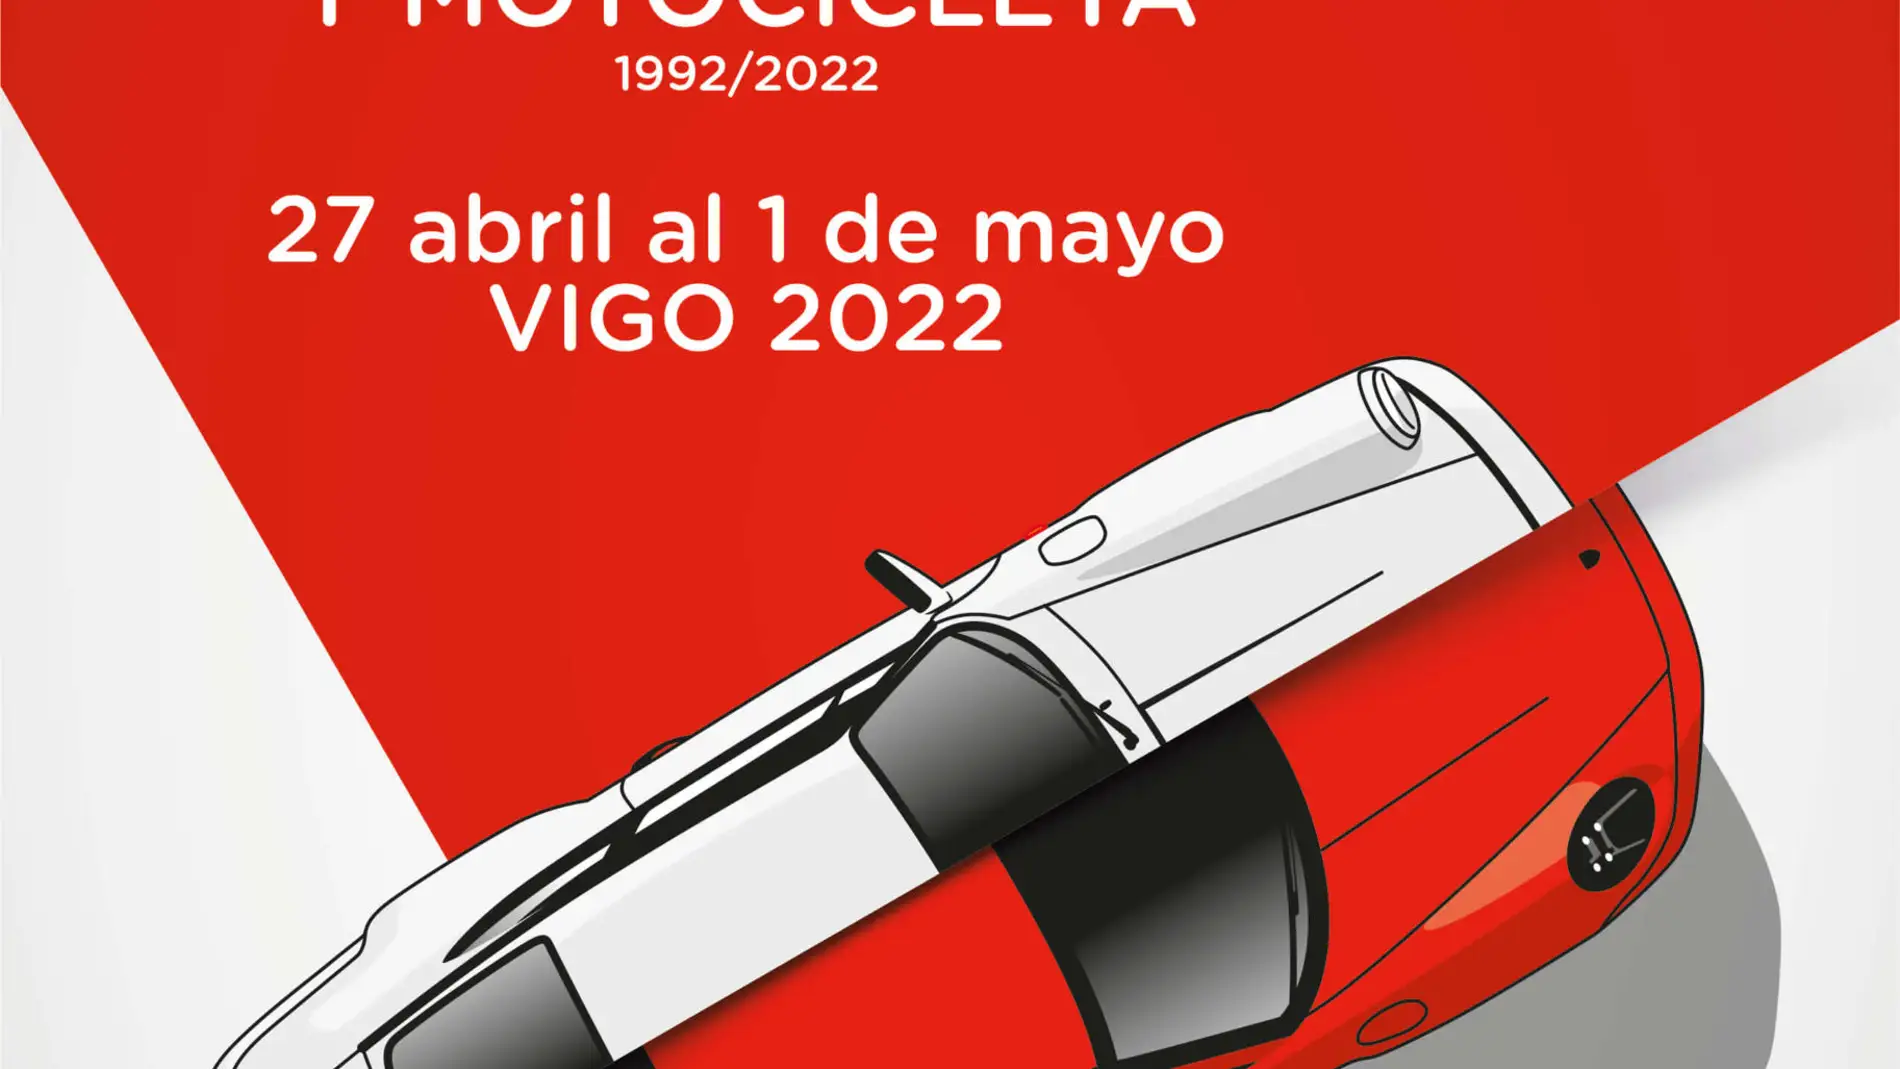  Salón del automóvil de Vigo 2022